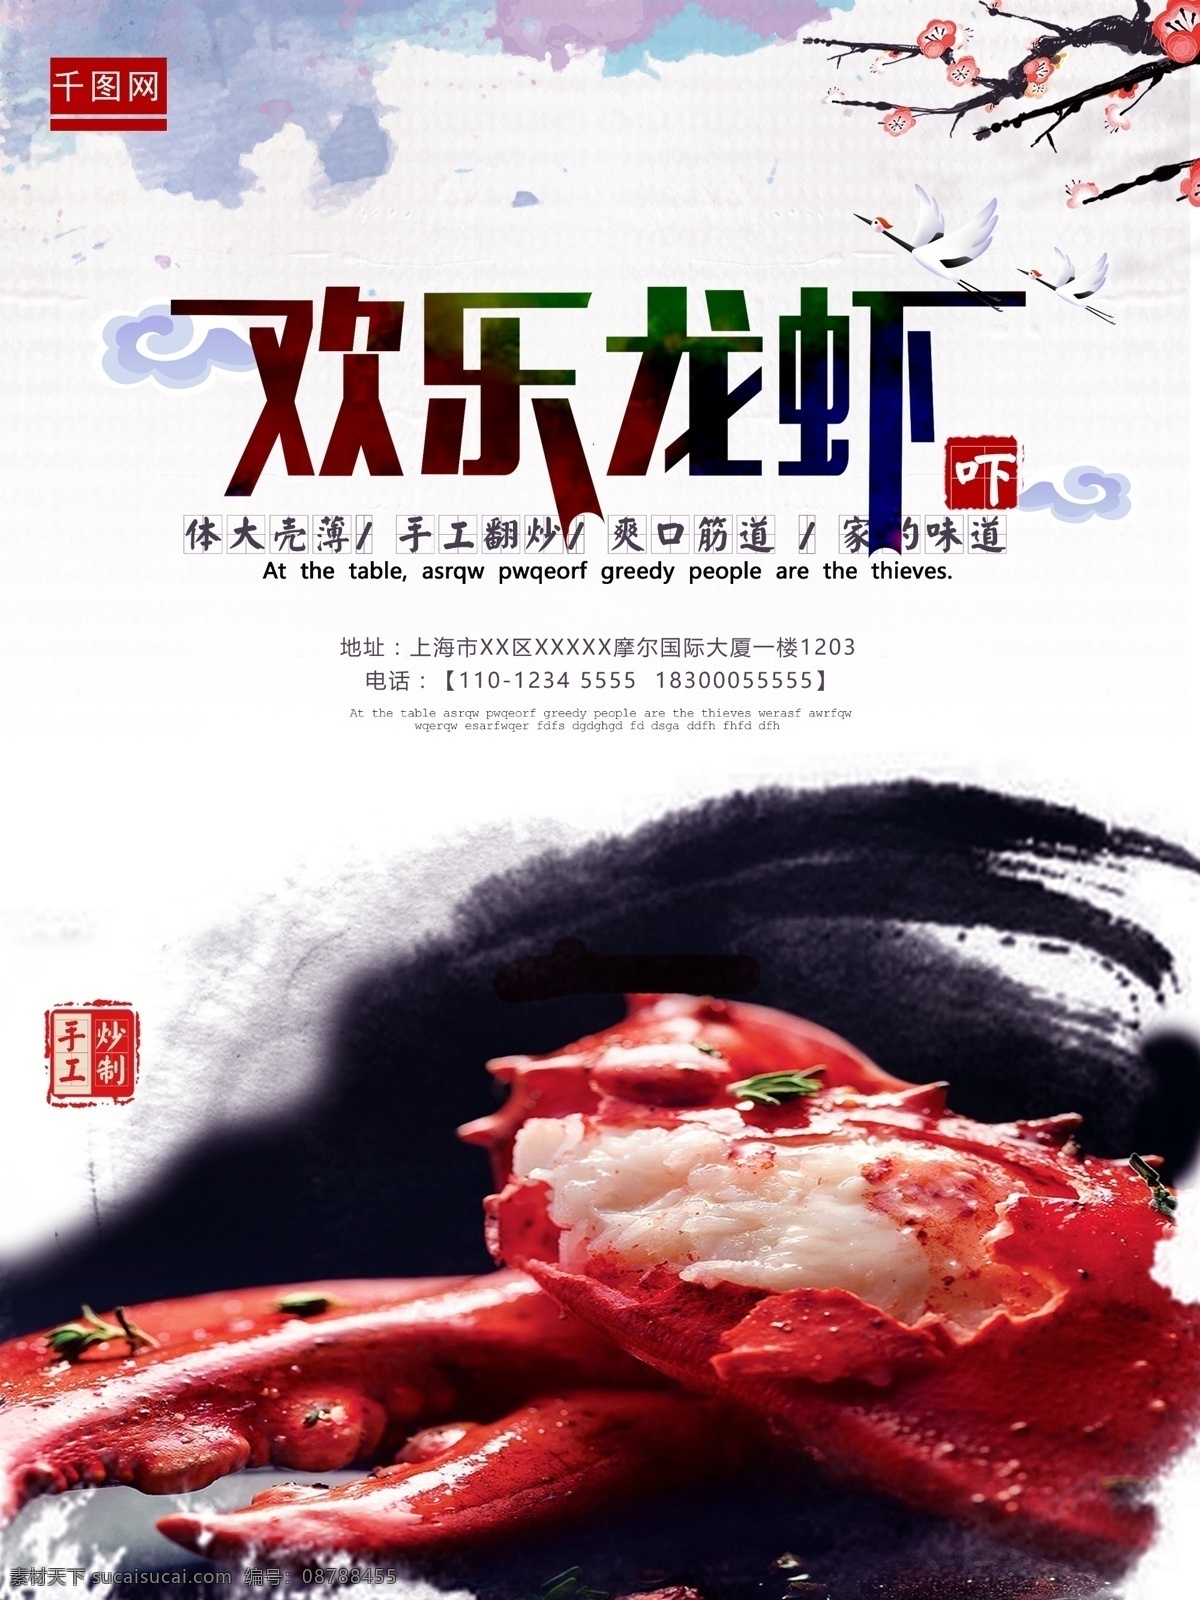 欢乐 龙虾 美食 海报 欢乐龙虾 手工炒制 优质龙虾 中国风 家的味道